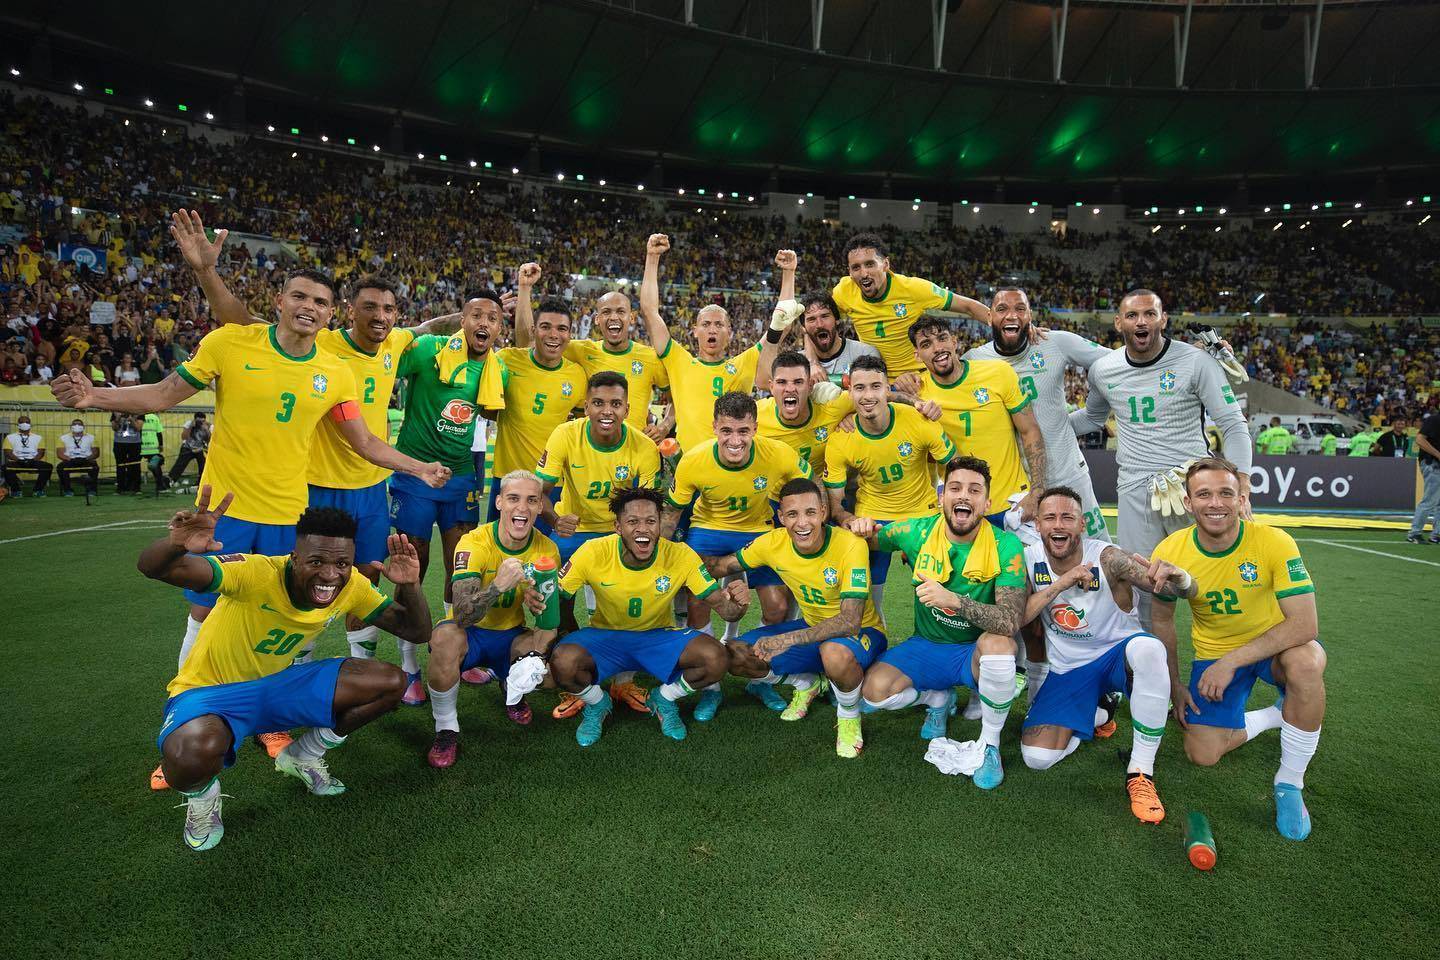 足球王国归来!阵容均衡,深度出色的巴西才是世界杯夺冠热门!